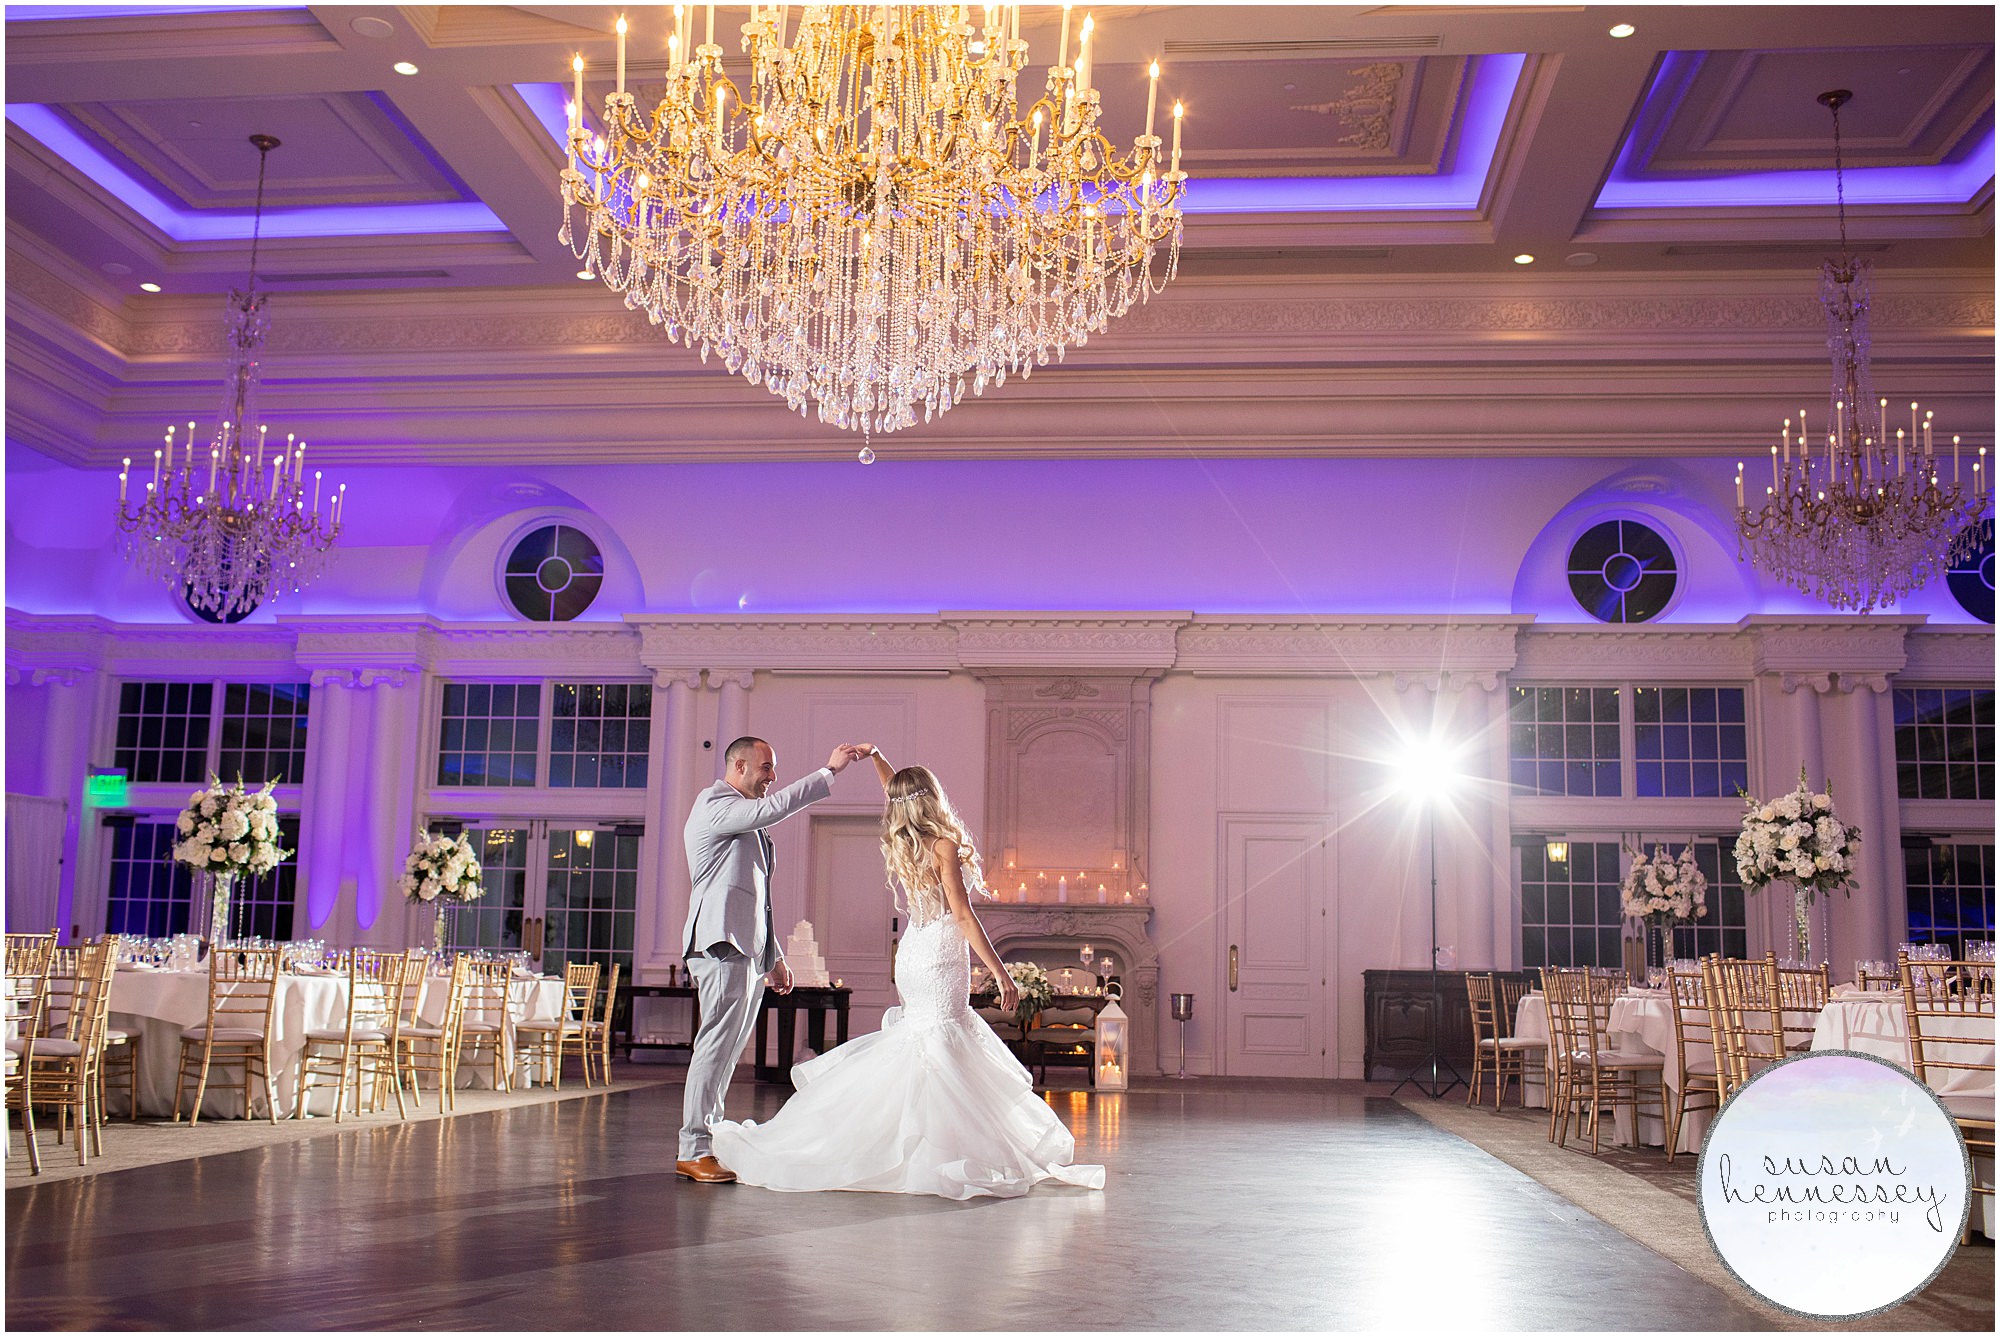 Groom twirls bride on dance floor.